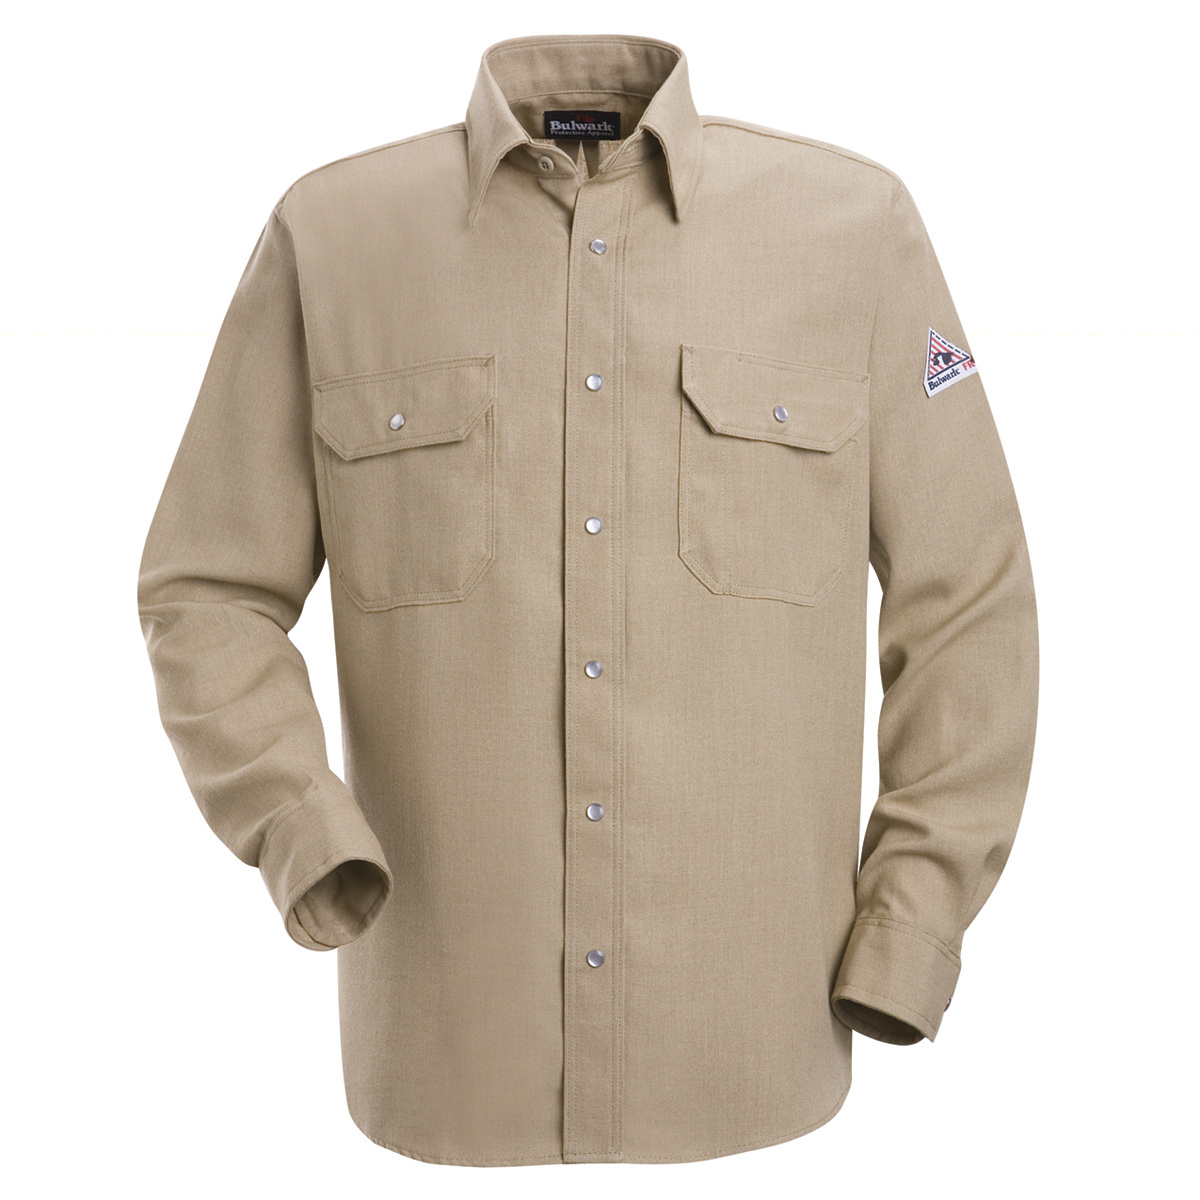 Bulwark® Small| Regular Tan Nomex® IIIA/Nomex® Aramid/Kevlar® Aramid Flame Resistant Uniform Shirt With Snap Front Closure